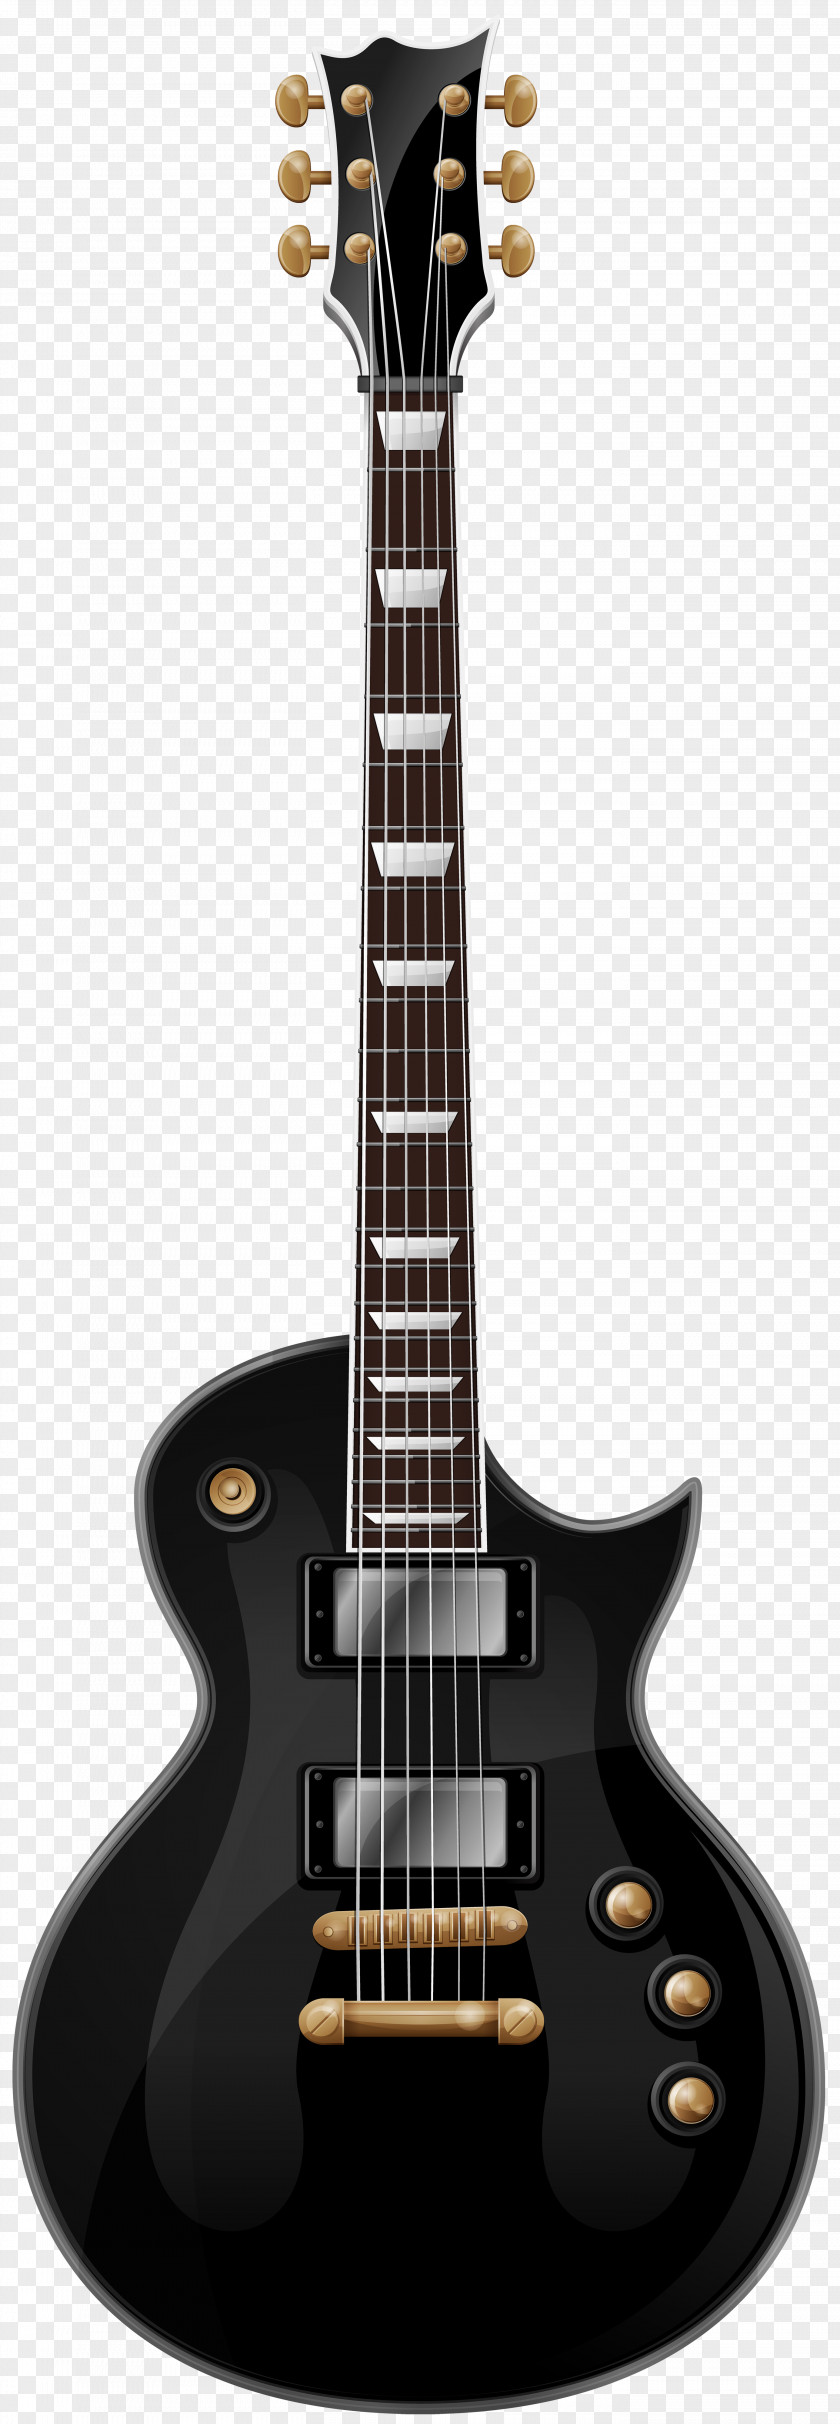 Black Guitar ESP LTD EC-1000 Guitars Electric EC-401 PNG